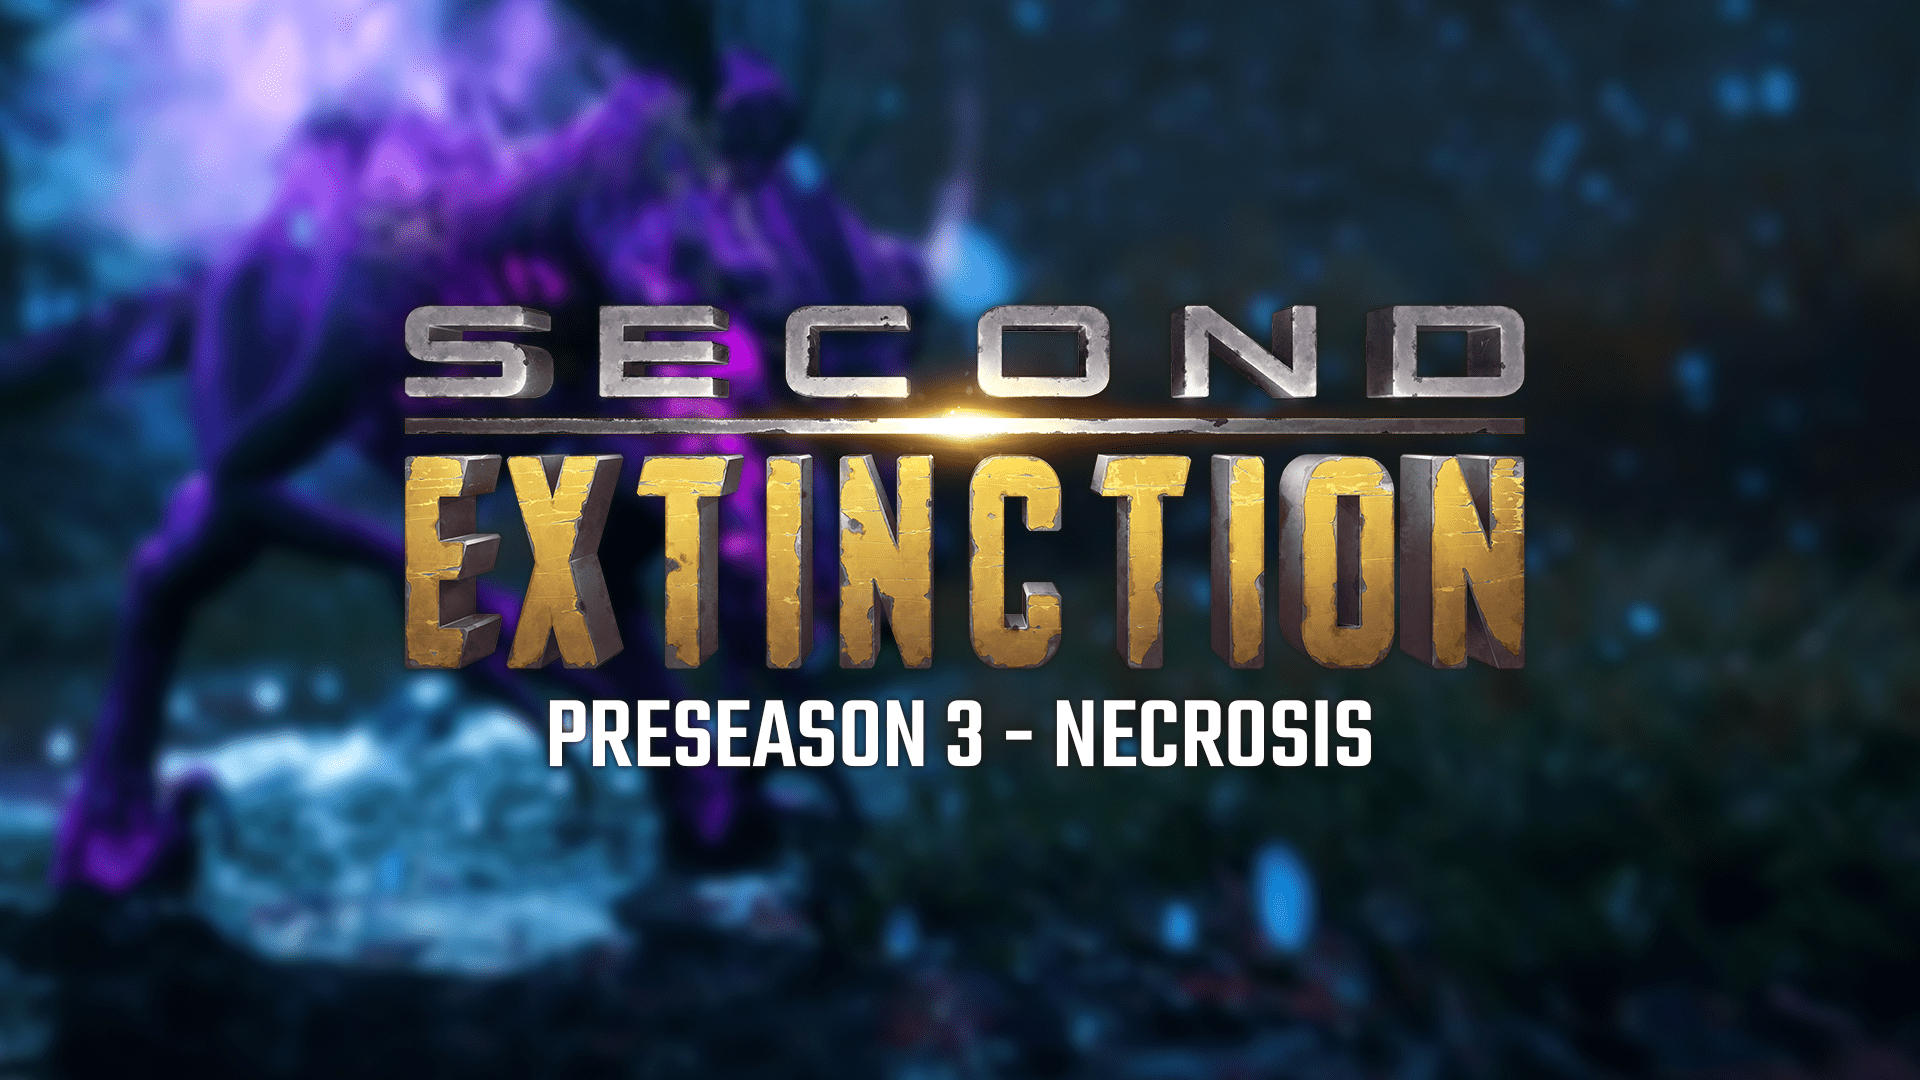 Preseason 3 – Necrosis Trailer